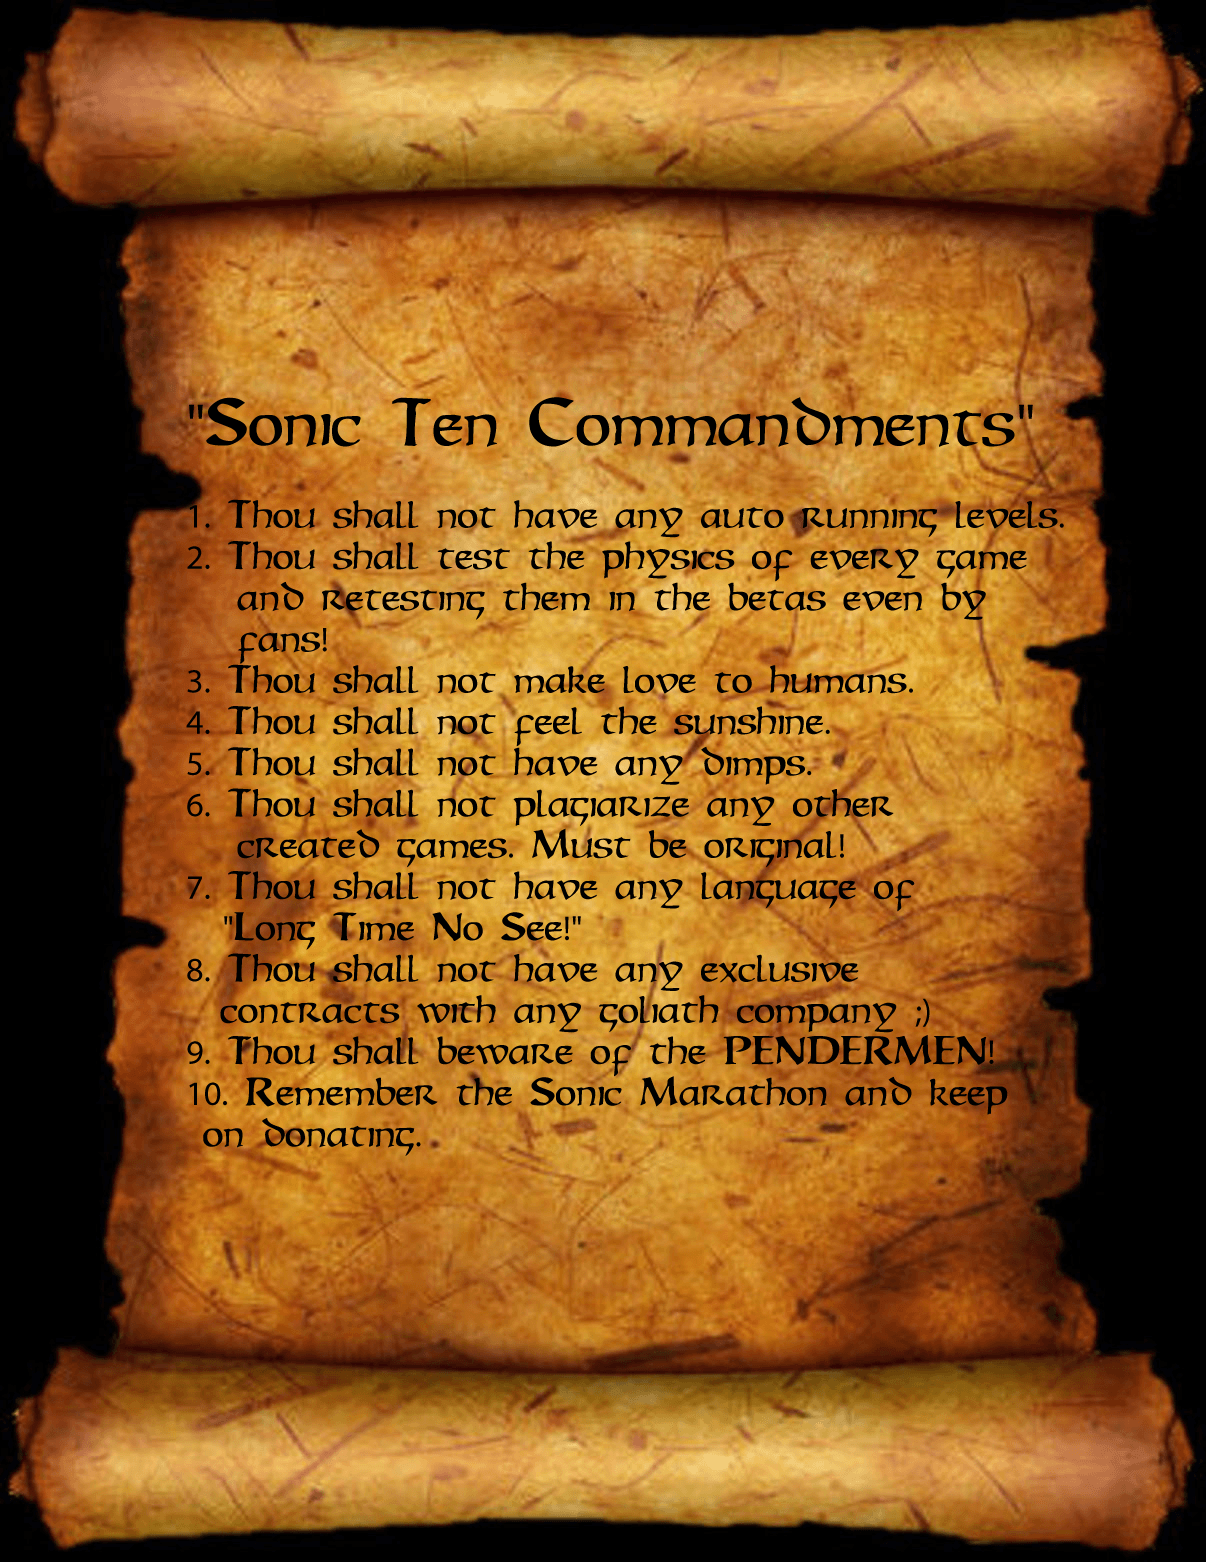 THE SONIC TEN COMMANDMENTS